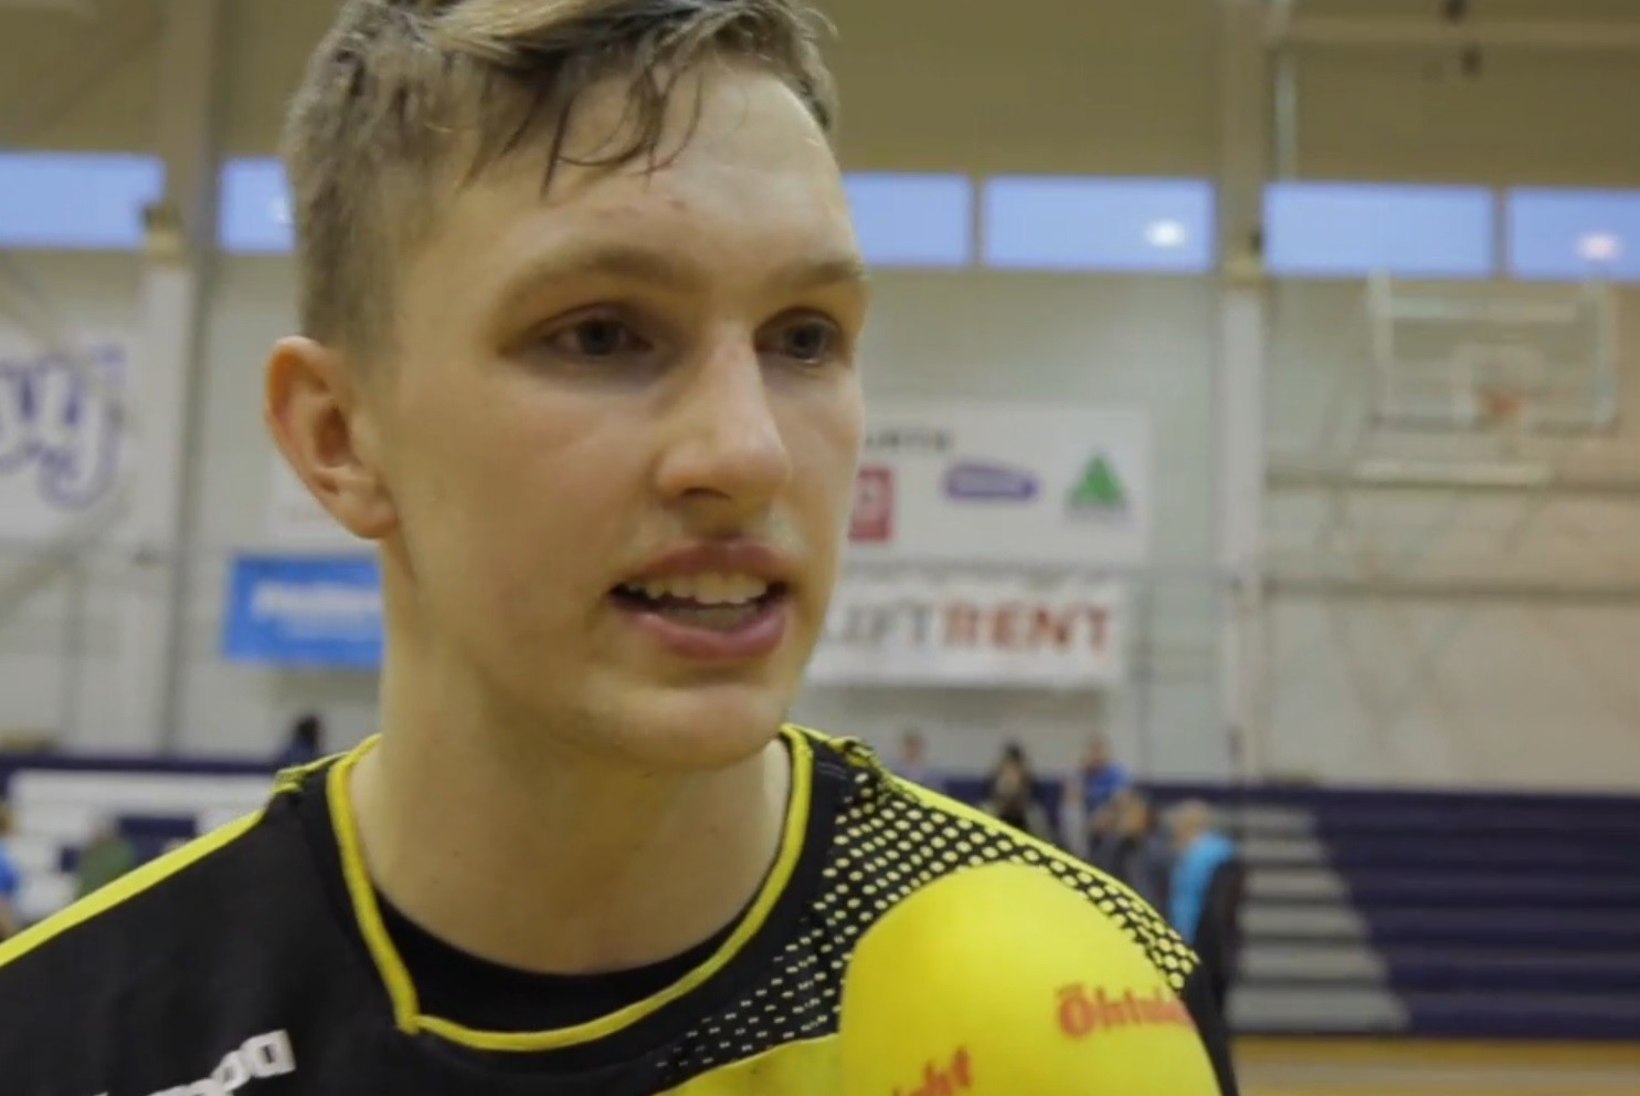 ÕHTULEHE VIDEO | 18aastane käsipallur Karl Toom: töö Saksamaale pääsemise nimel algas 10 aastat tagasi